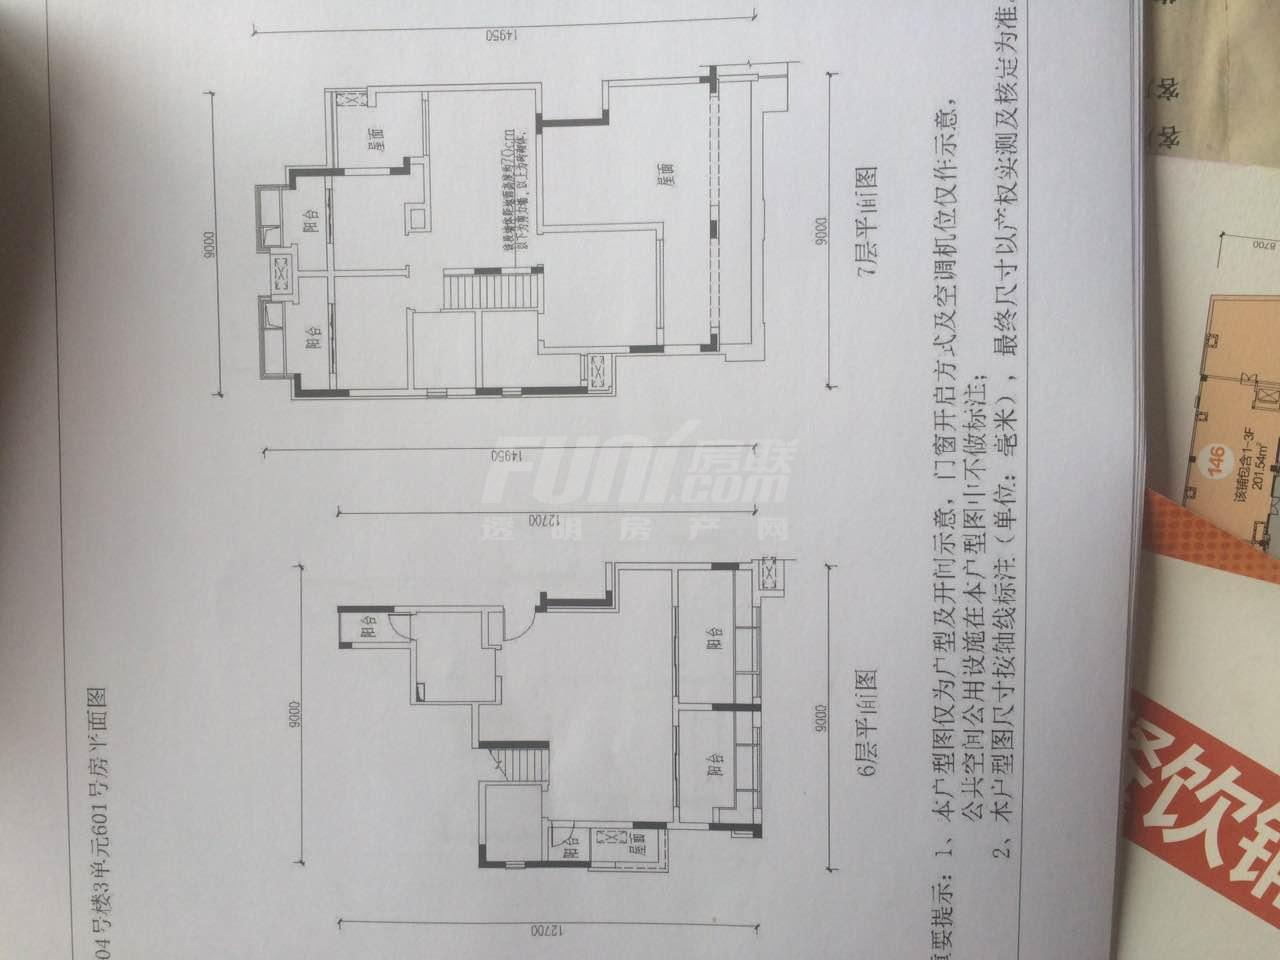 合能璞丽6号楼2户型图,4室2厅2卫14100平米